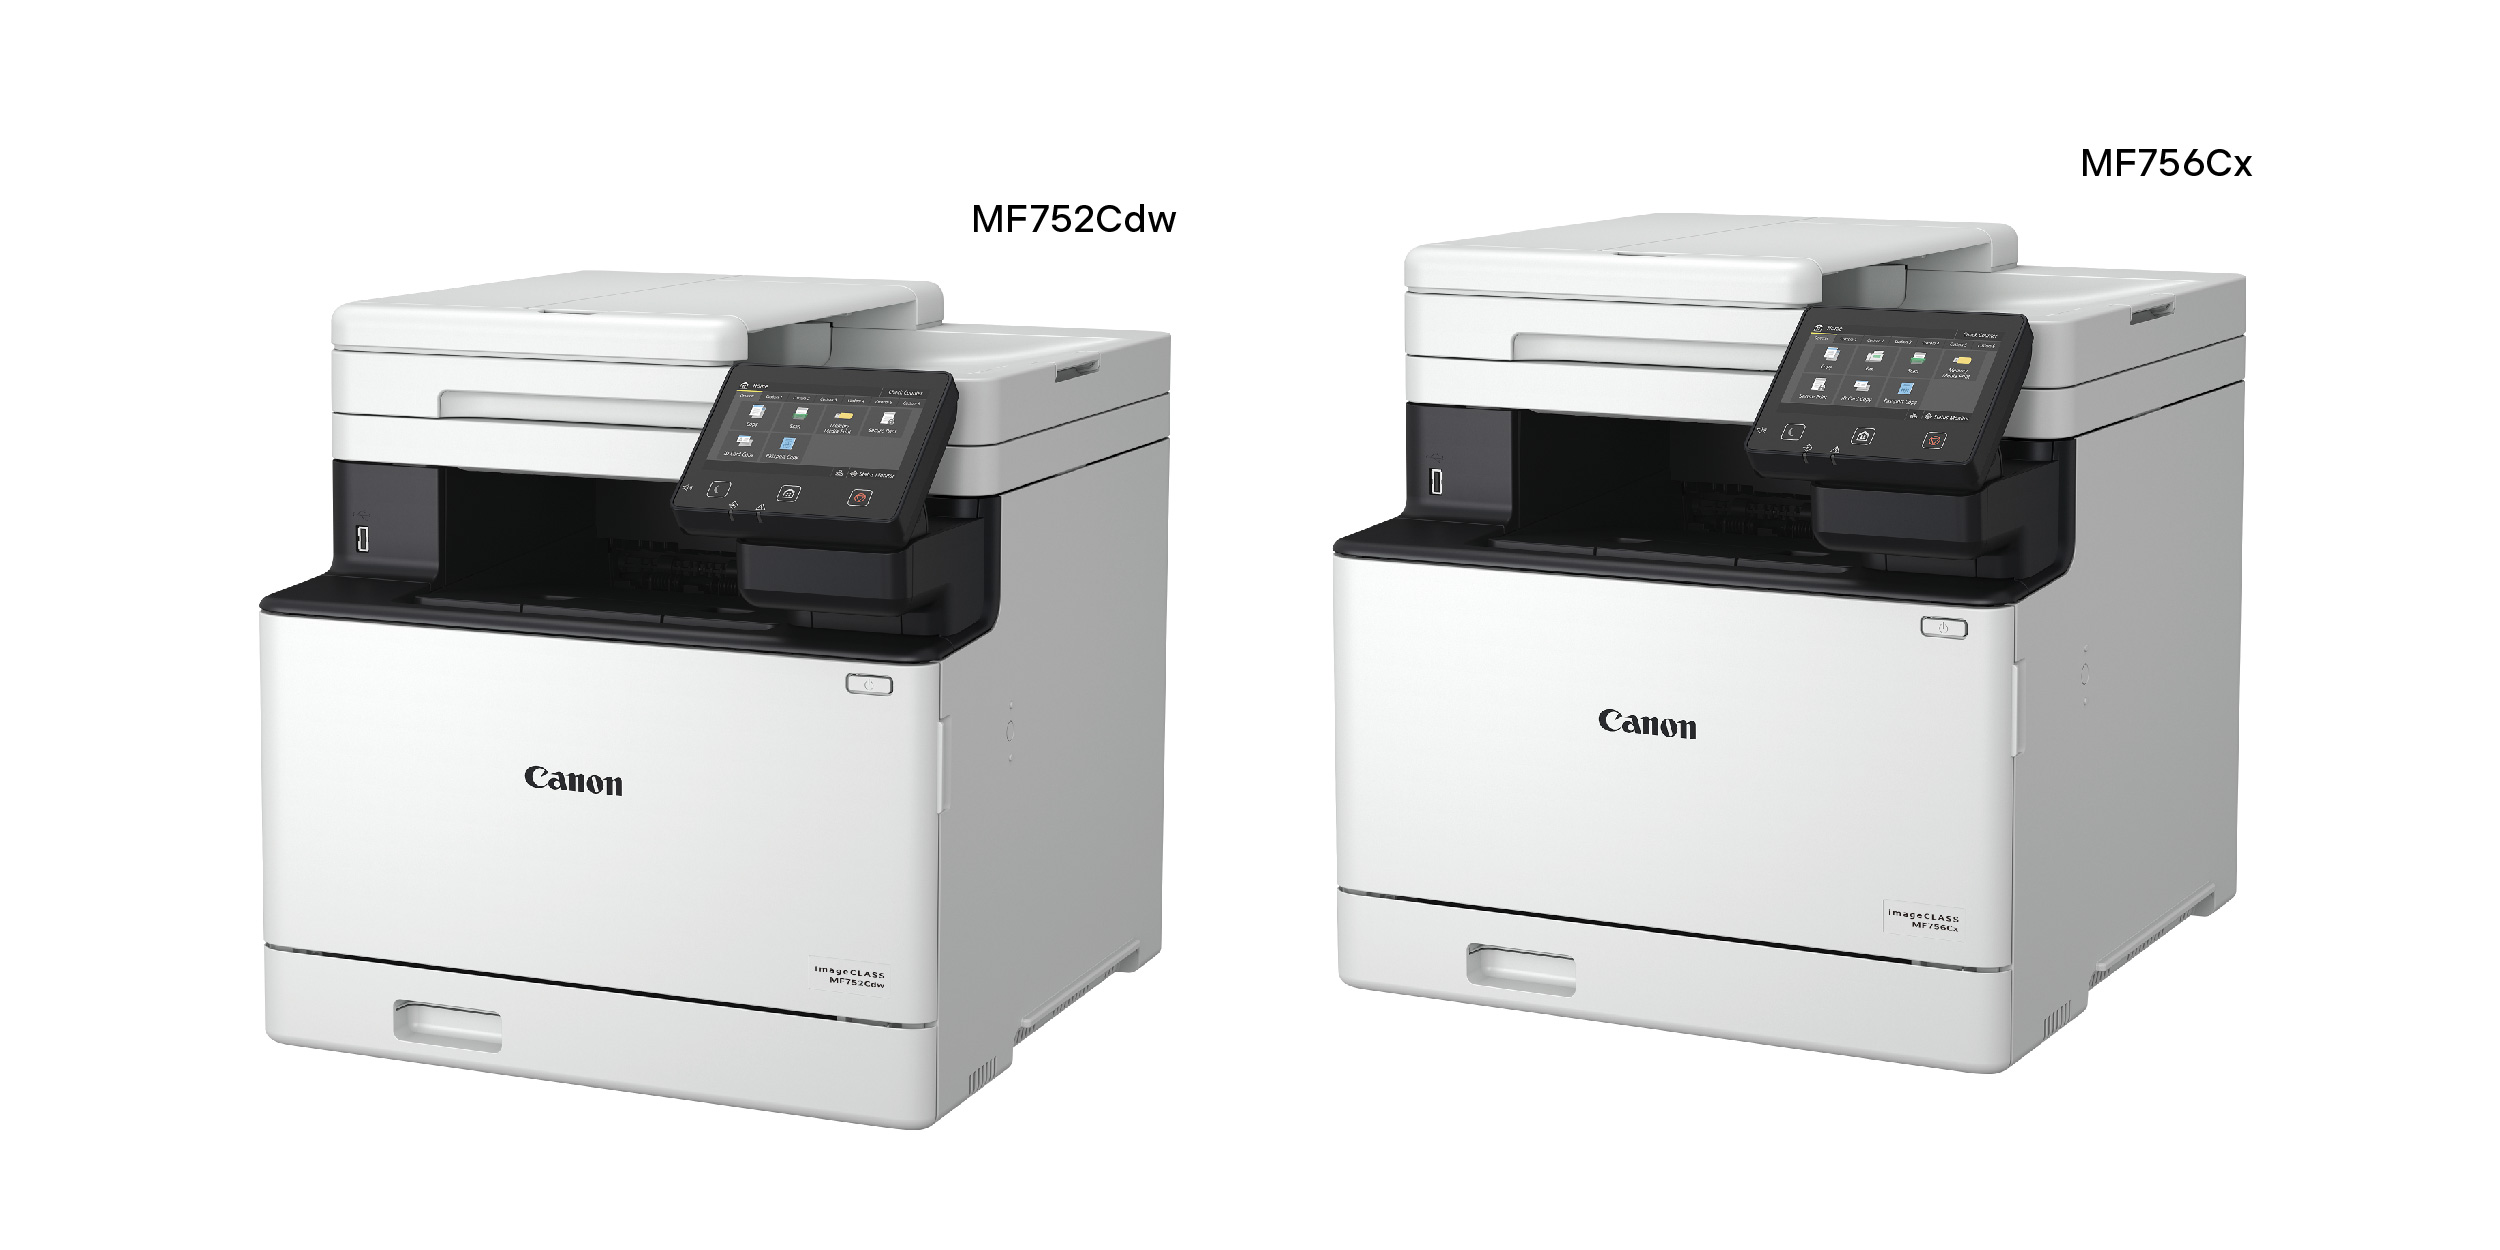 Canon imageCLASS MF752Cdw, MF756Cx Laser Colour Printer